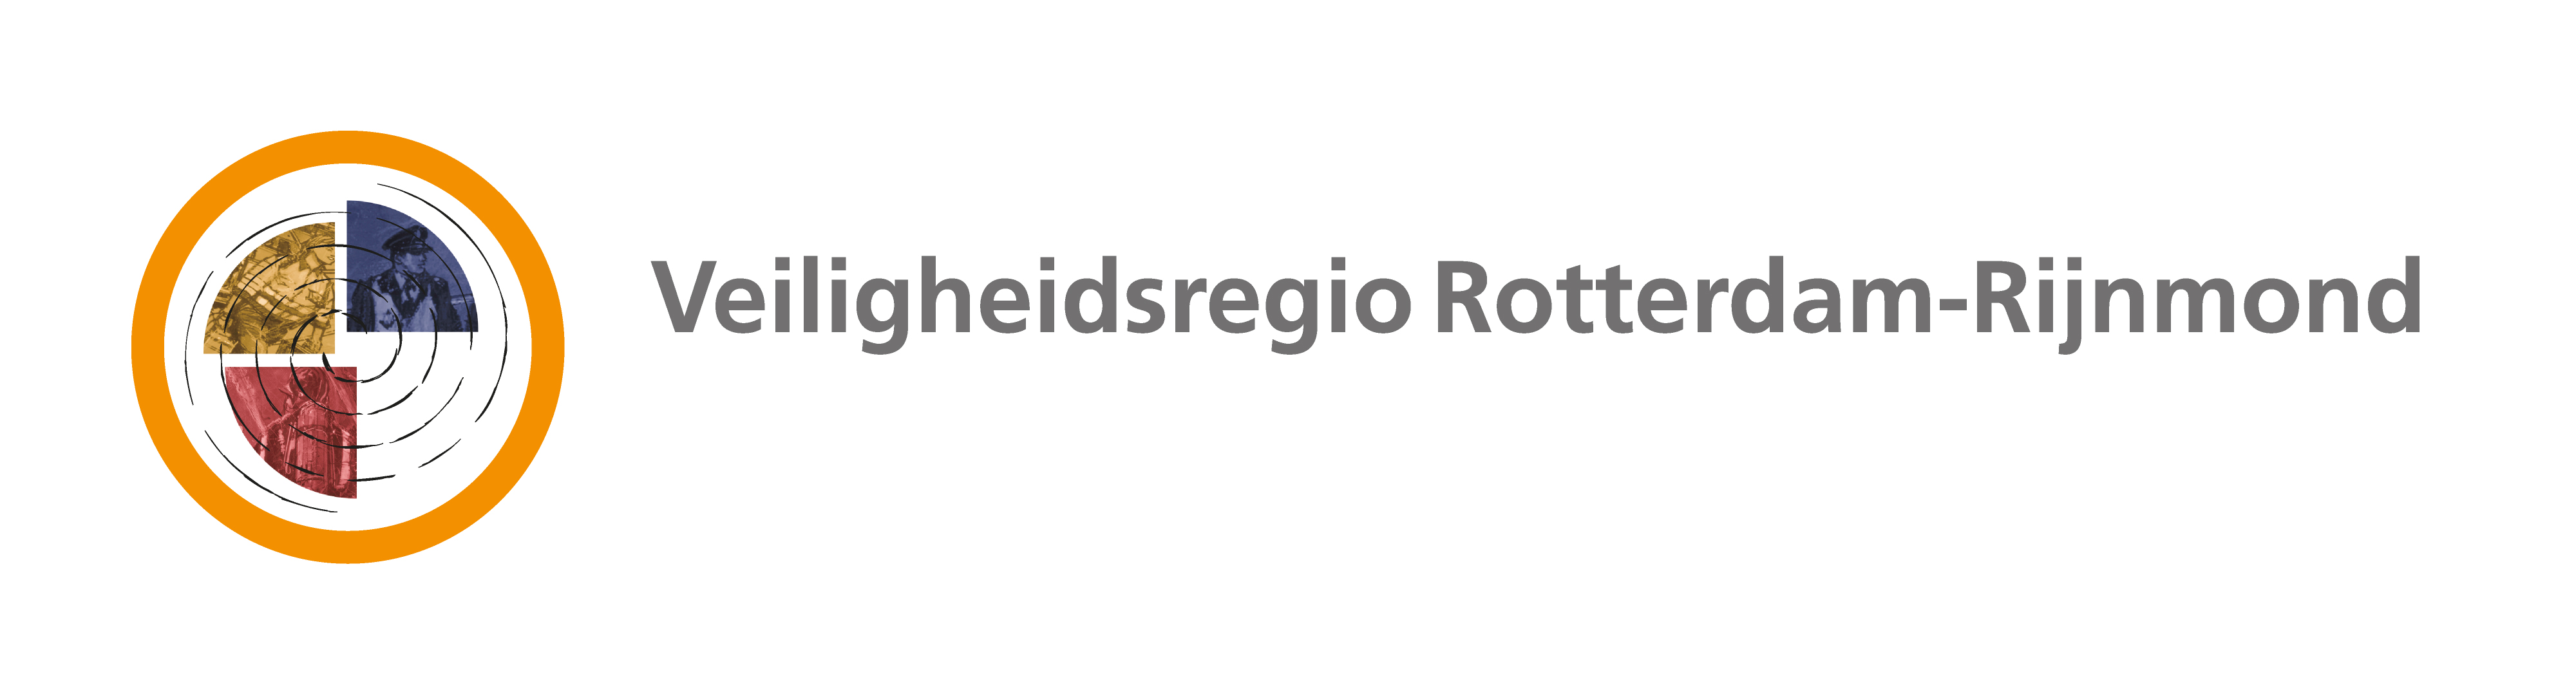 Rotterdam Safety Region logo